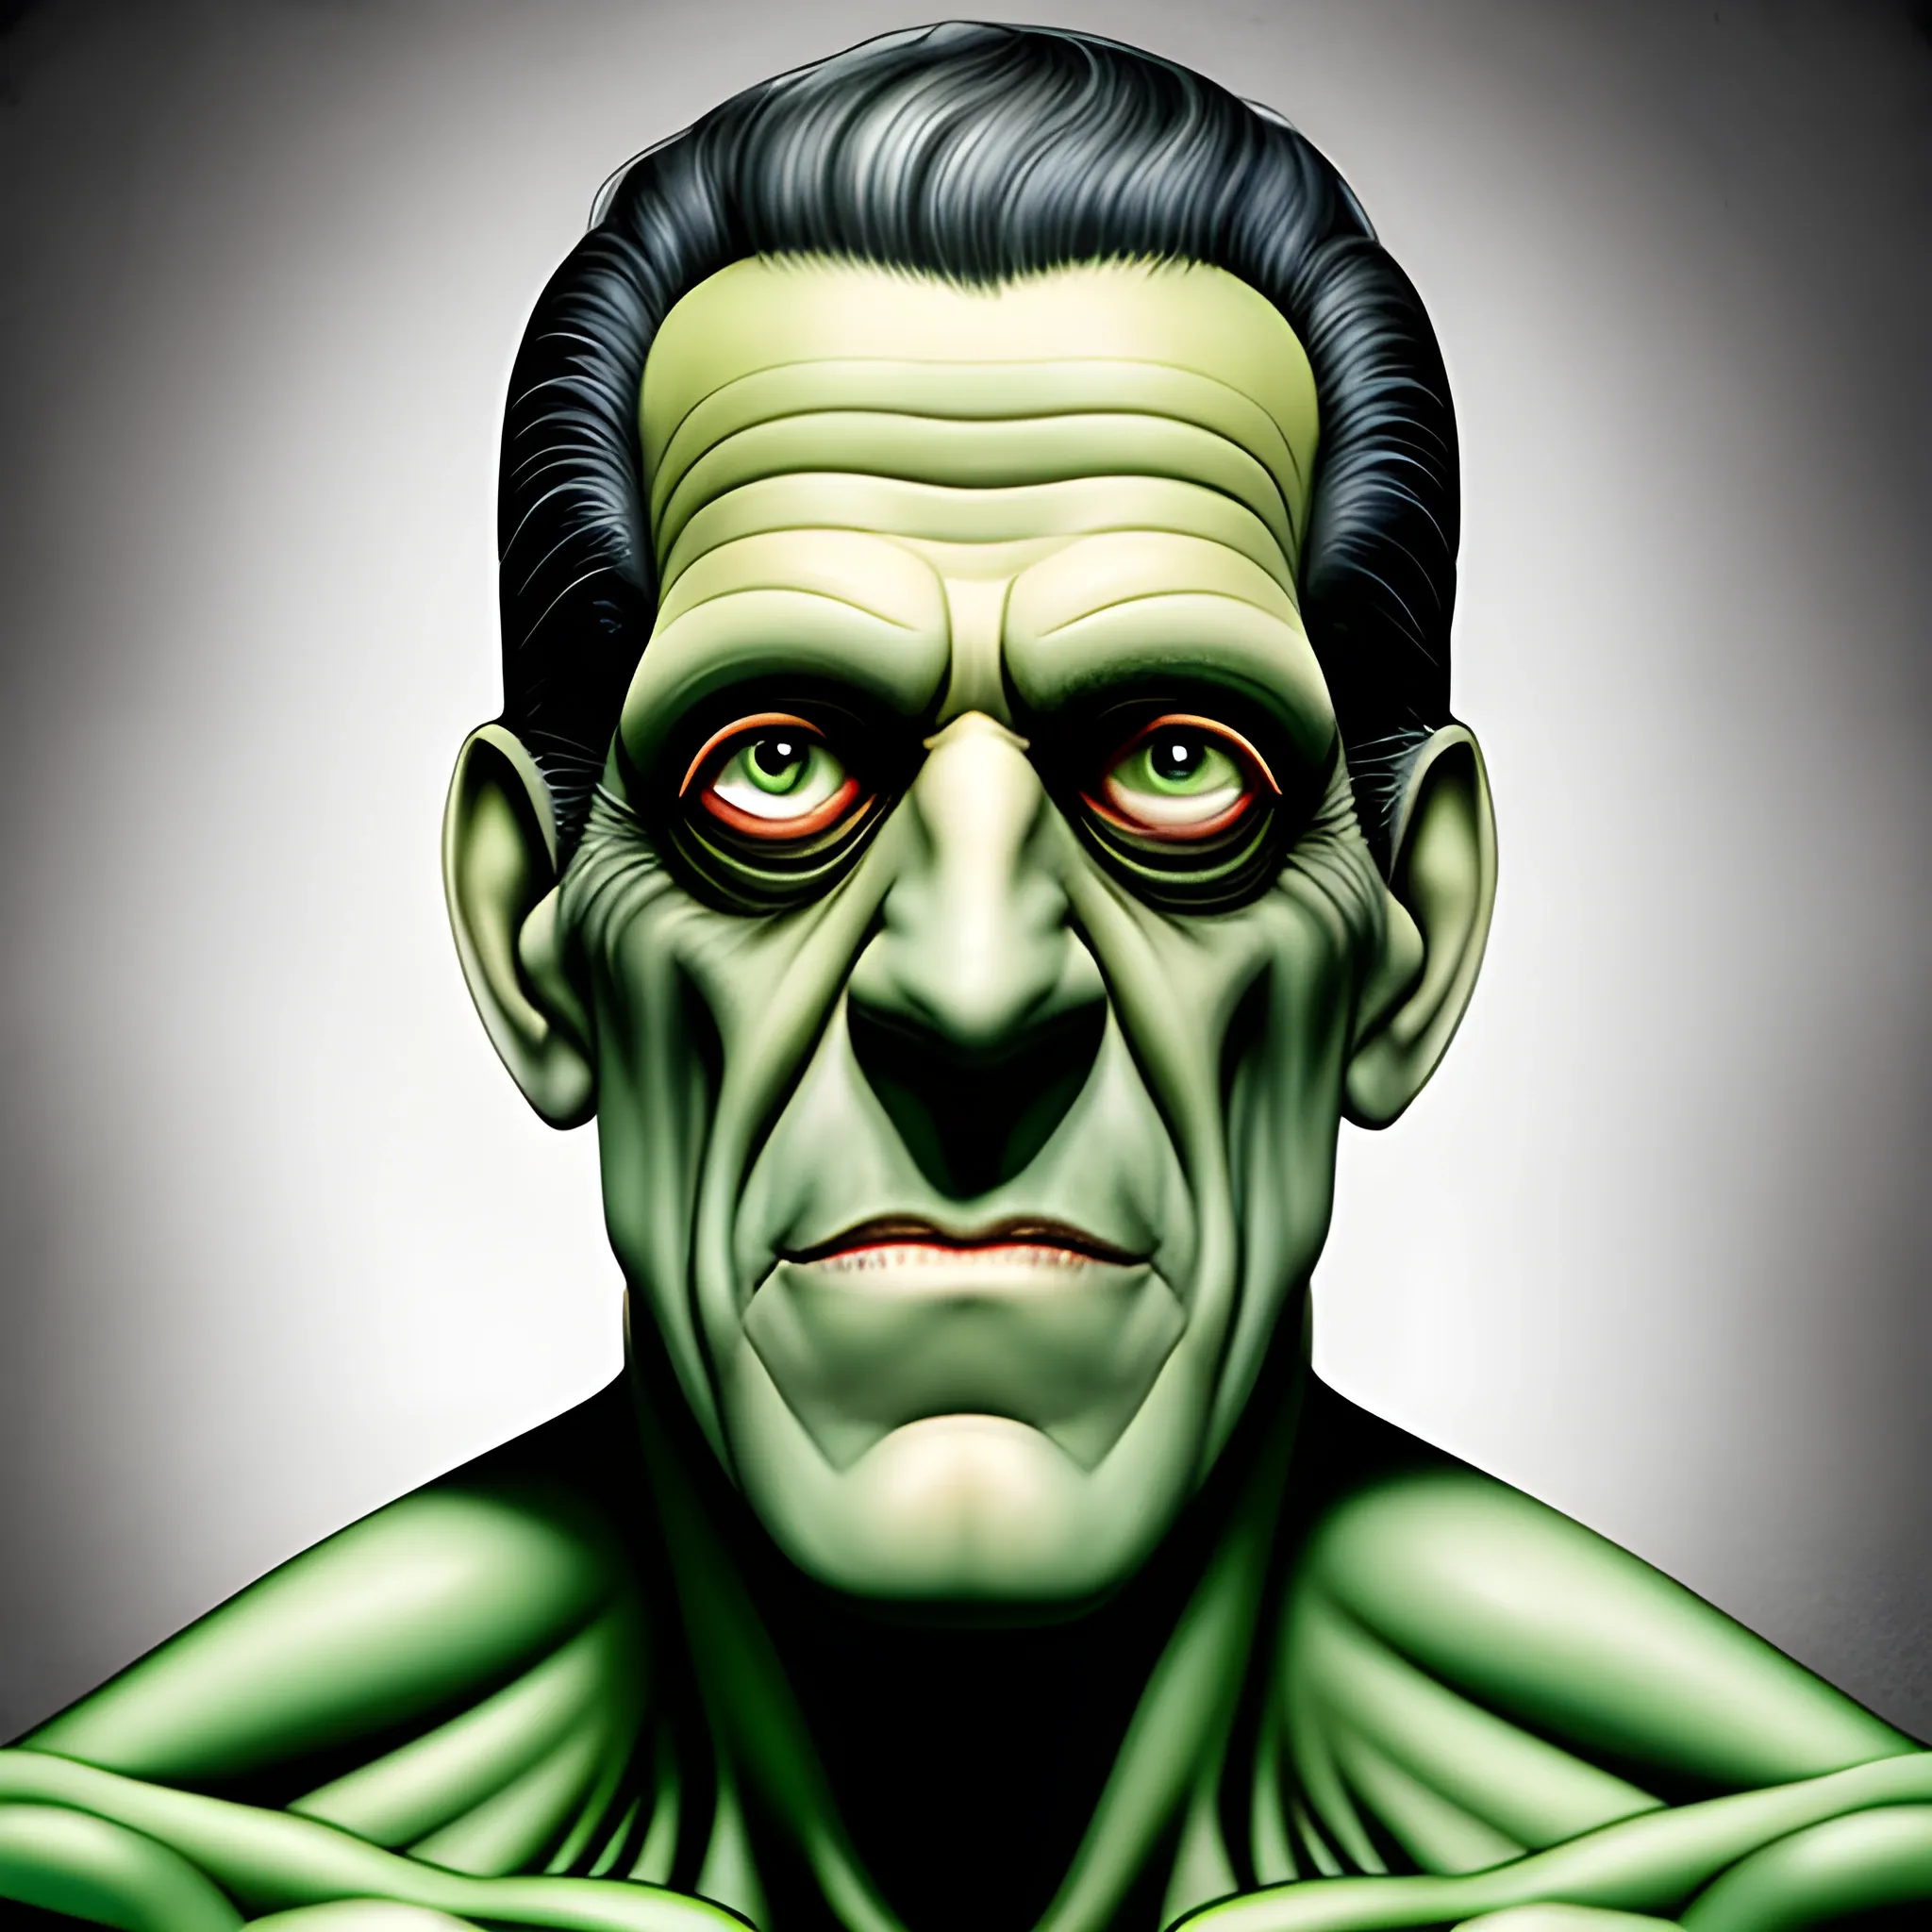 Fred gwynne young as Frankenstein portrait - Arthub.ai